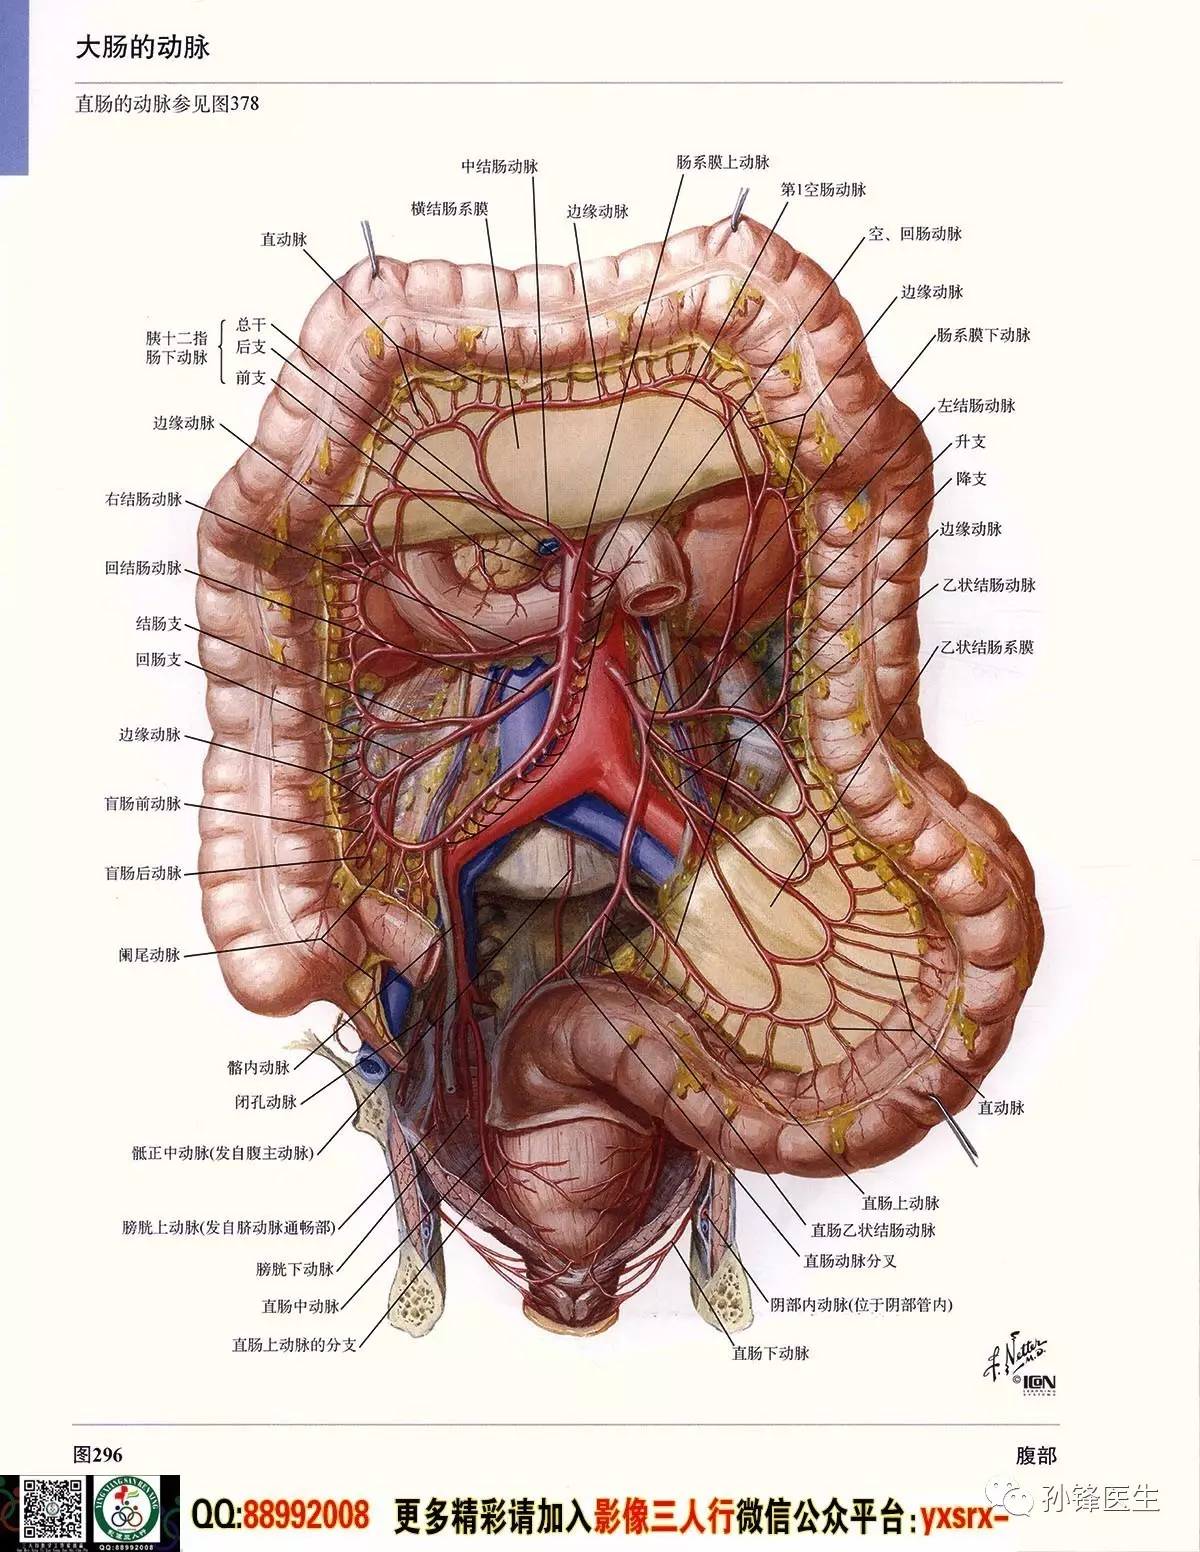 医学干货超高清的奈特人体解剖彩色图谱61腹部下